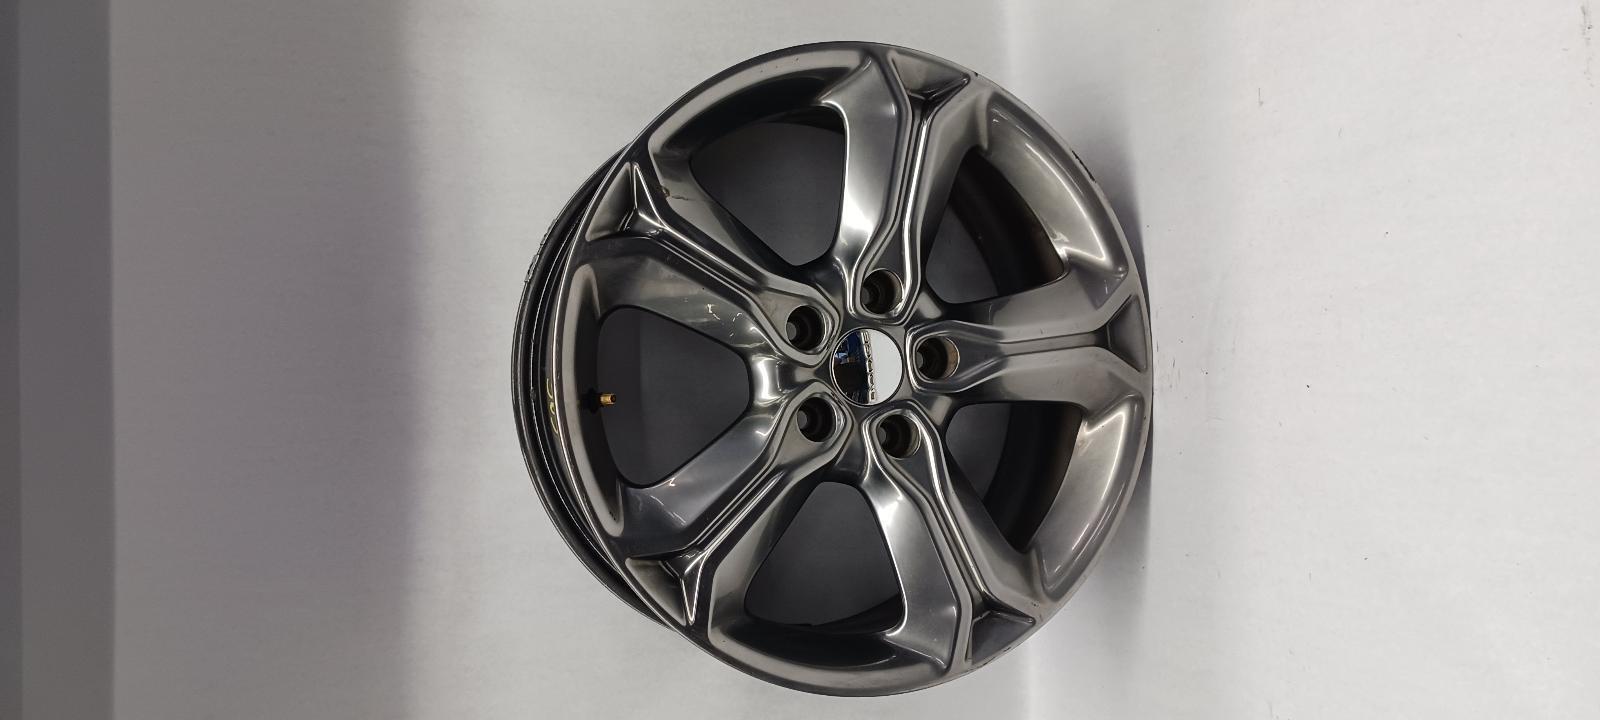 2017 DODGE JOURNEY Wheel 19x7 5 spoke aluminum hyper black OEM 14-18